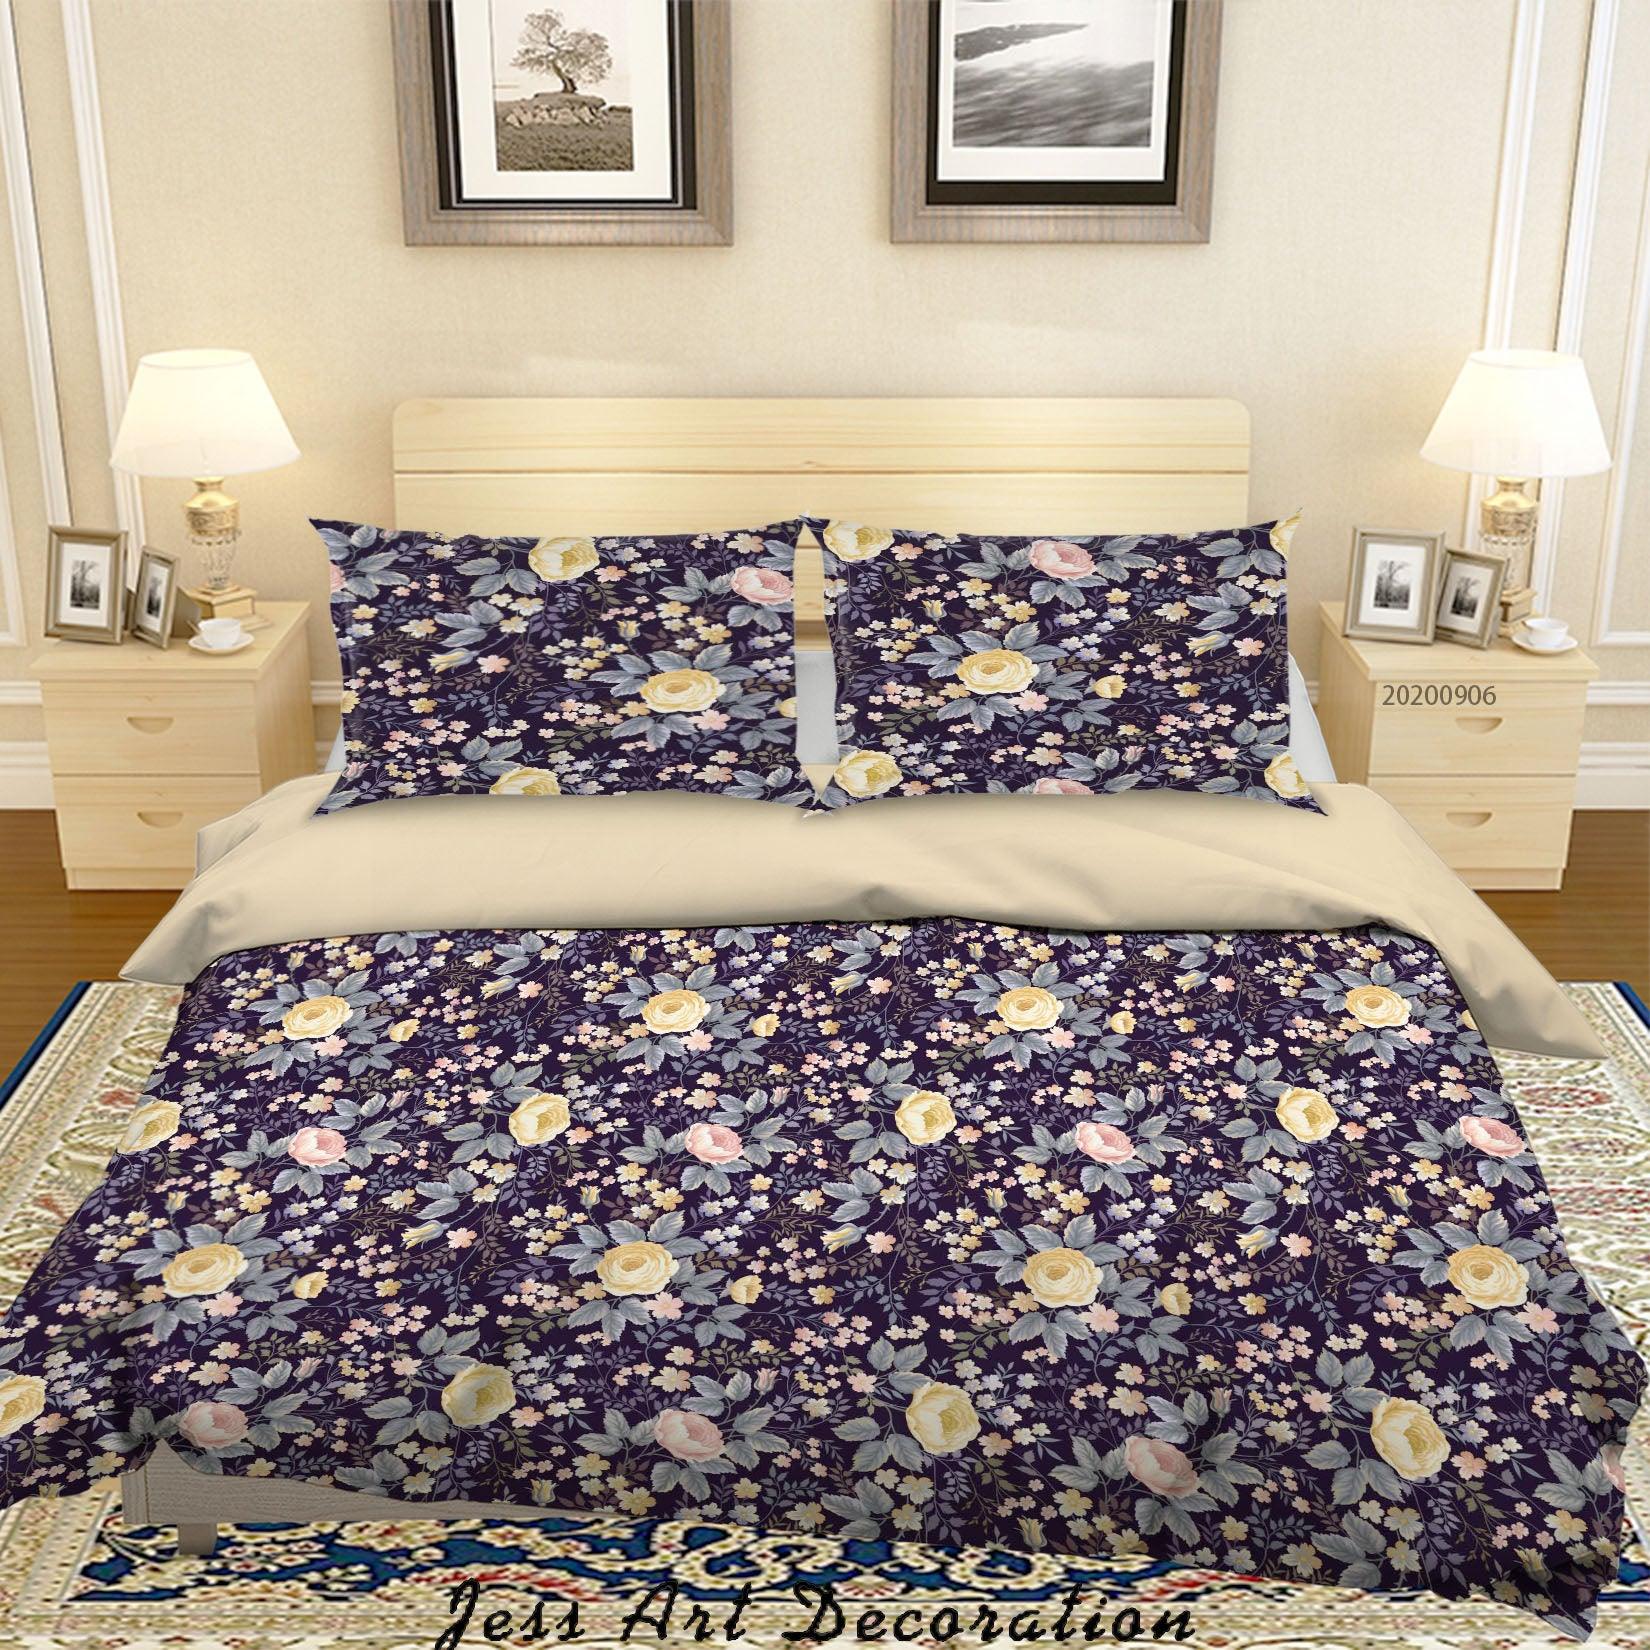 3D Vintage Leaves Floral Pattern Quilt Cover Set Bedding Set Duvet Cover Pillowcases WJ 3620- Jess Art Decoration